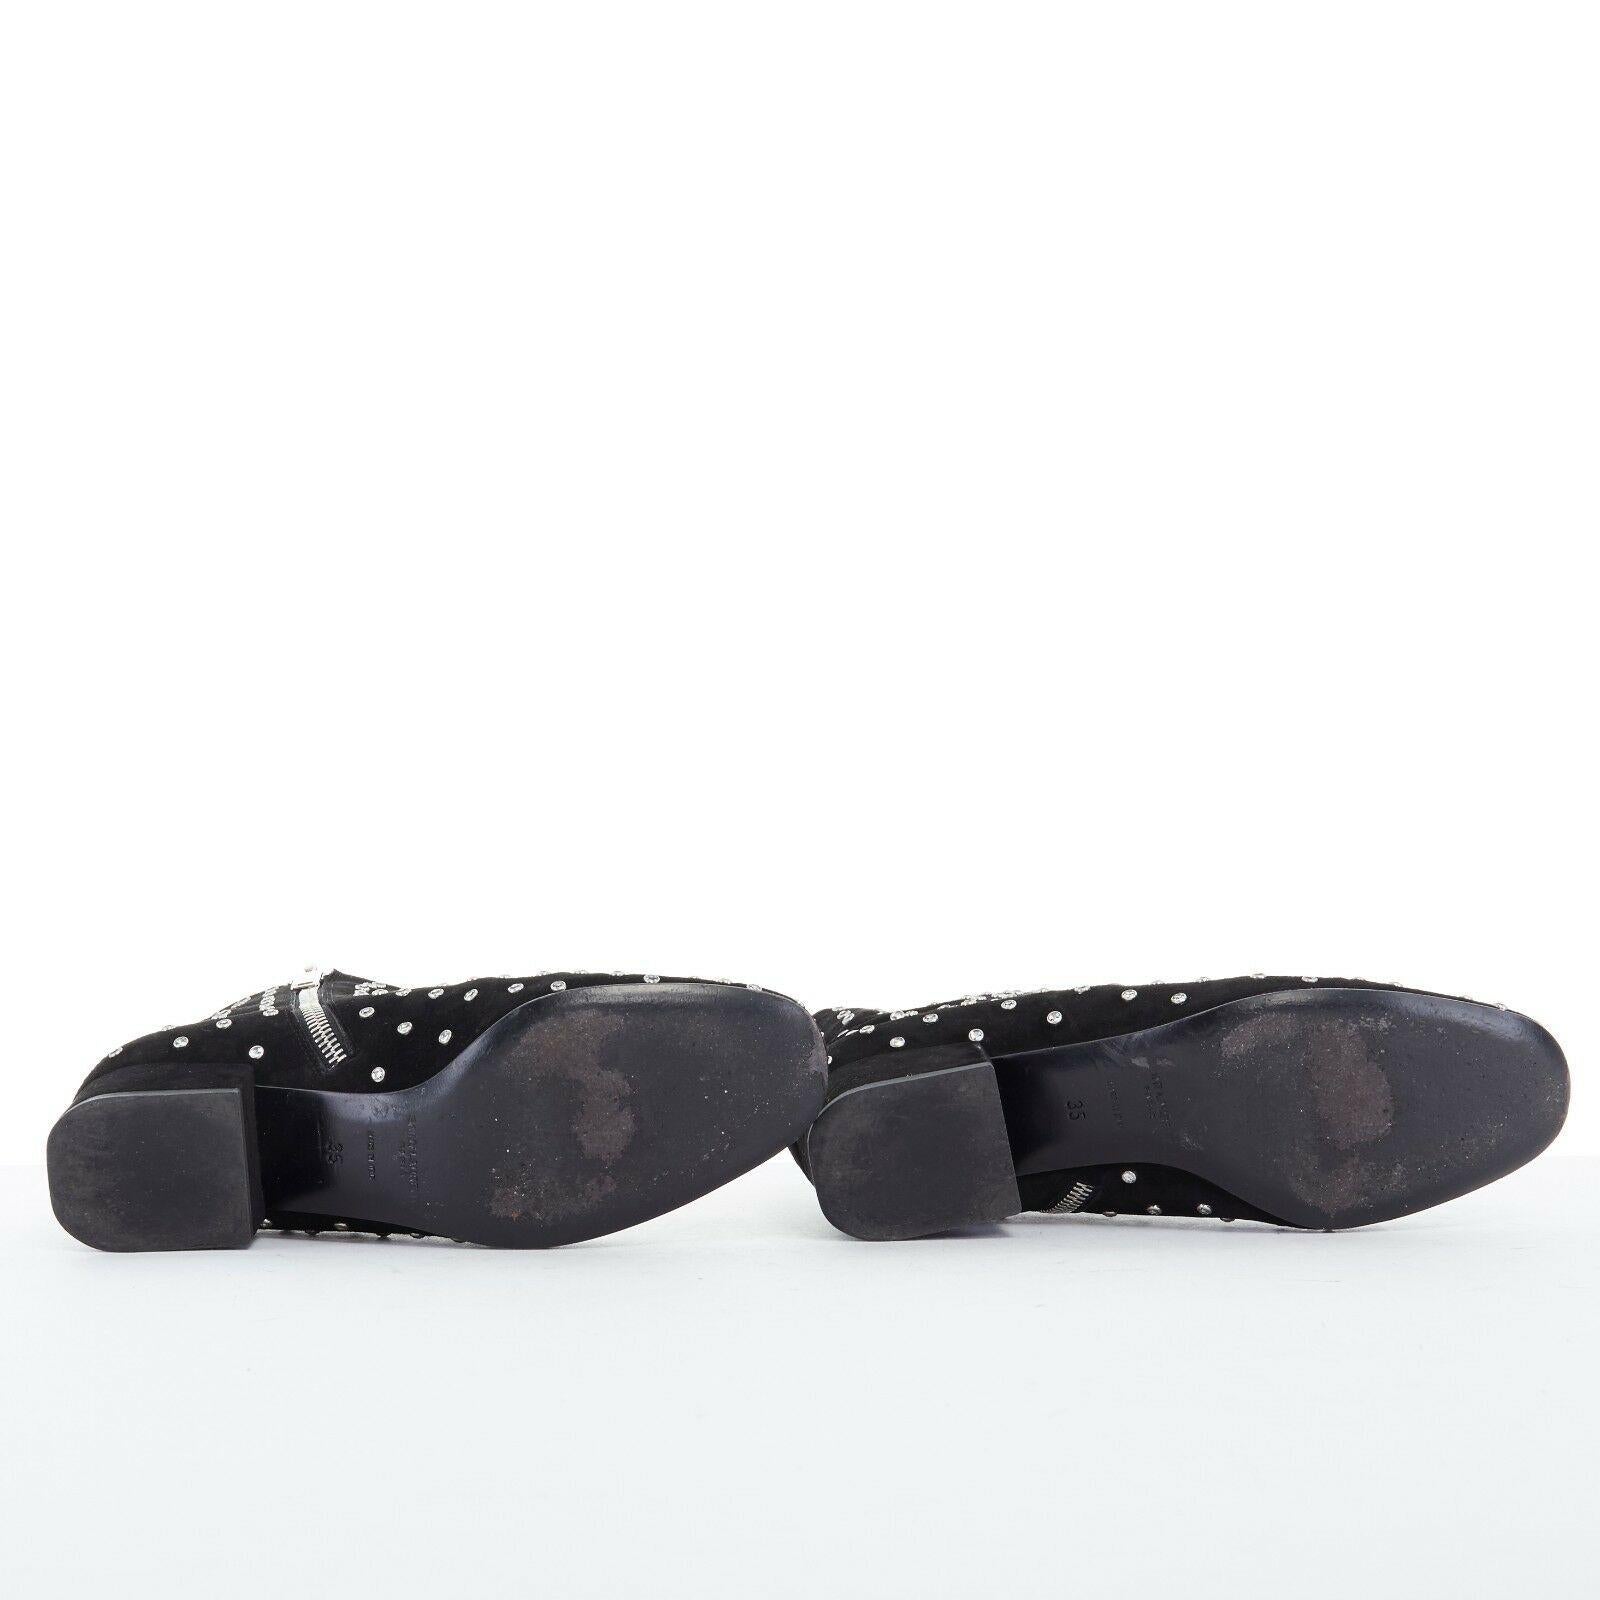 SAINT LAURENT PARIS black suede strass crystal embellished ankle boot shoe EU35 For Sale 2